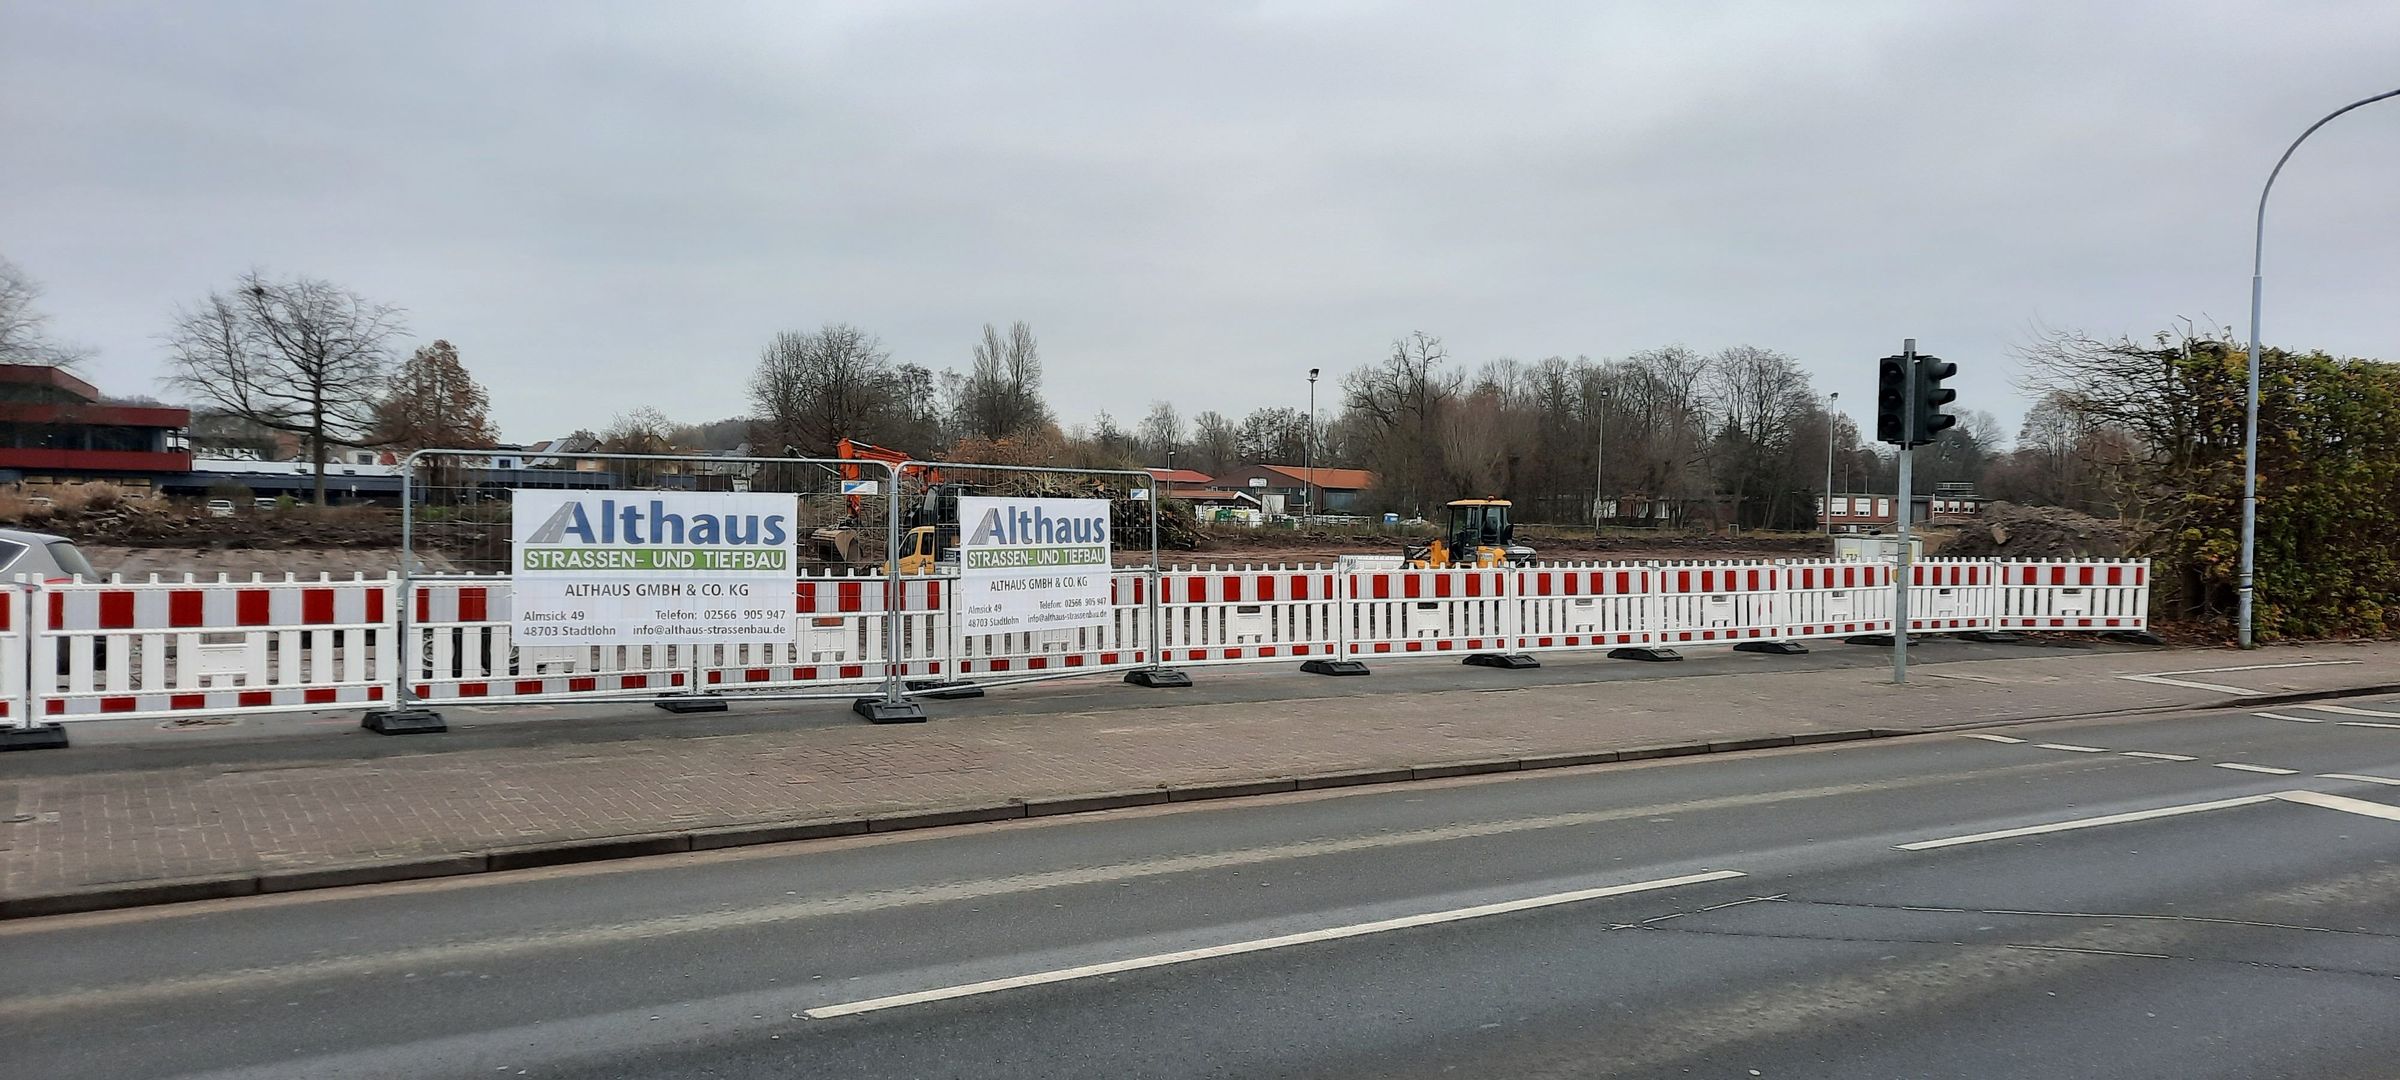 Aktuell | Althaus GmbH & Co